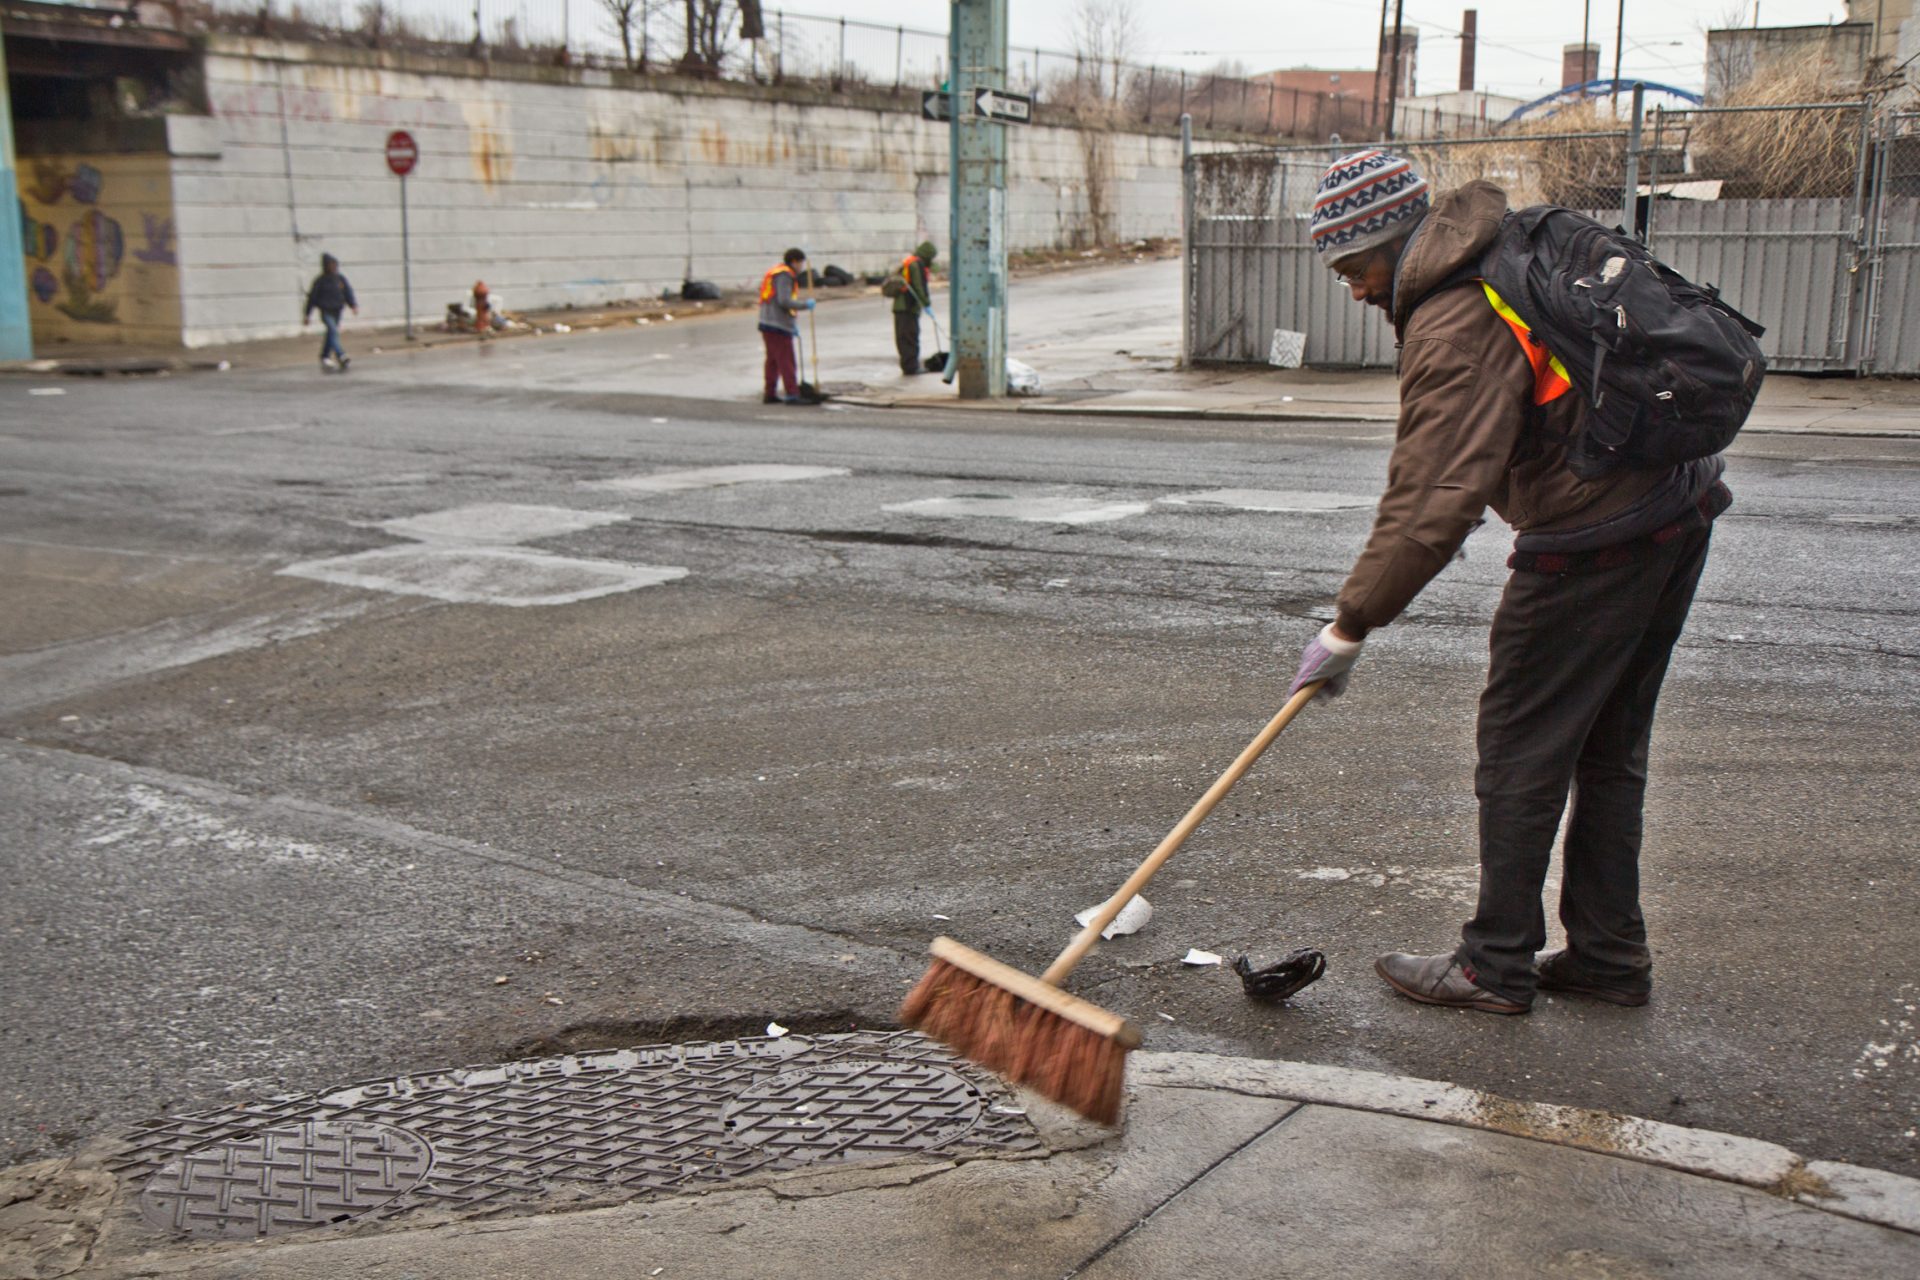 Brandon Johnson sweeps Kensington Ave. as part of the Work-to-Earn program in Philadelphia.